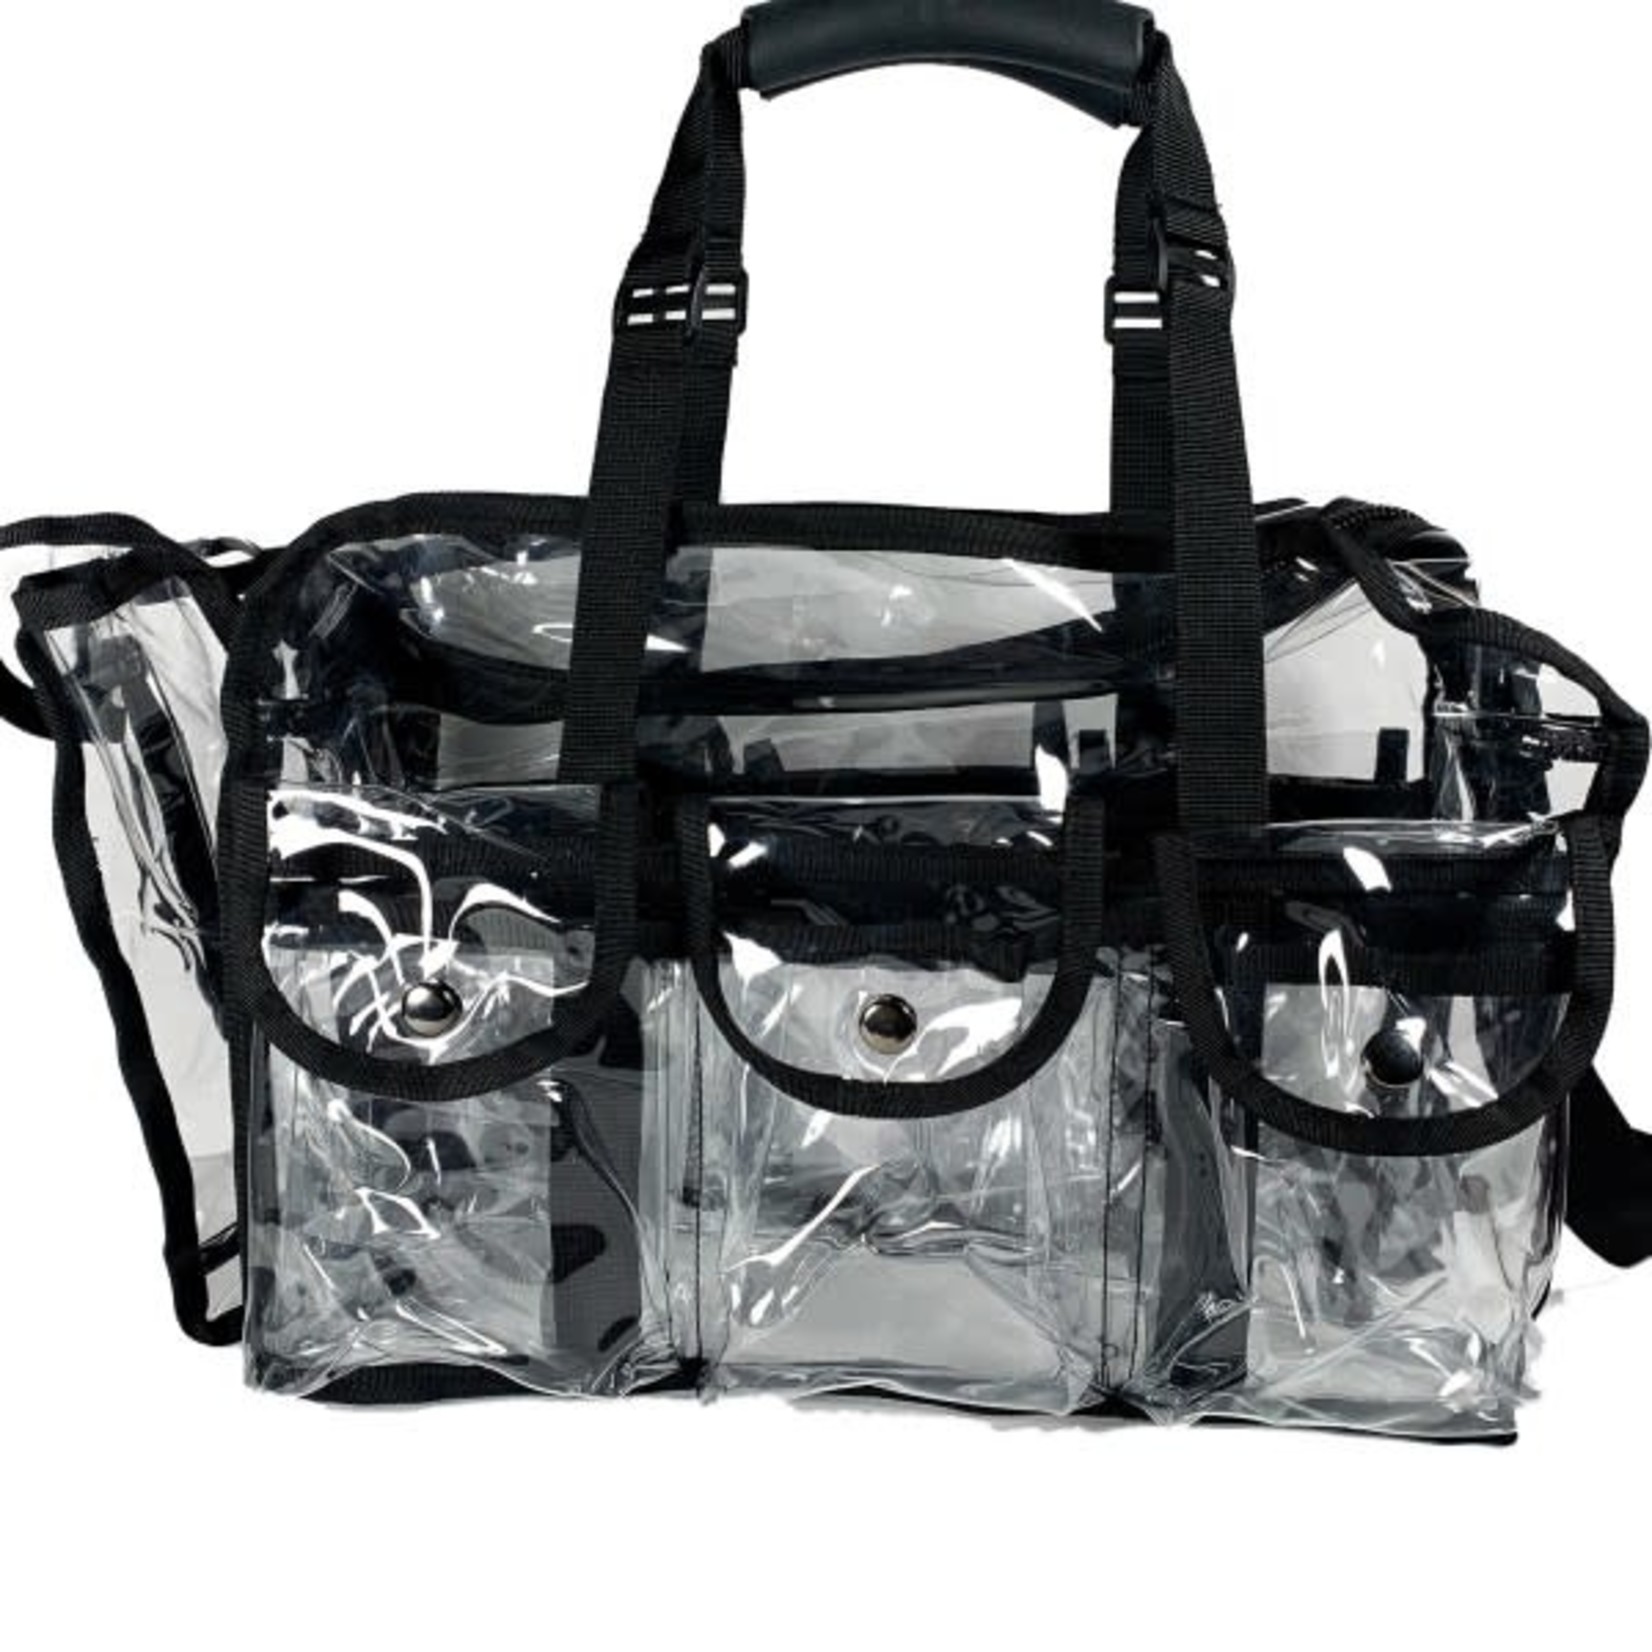 MUA Approved MUA-101 - Set Bag Large